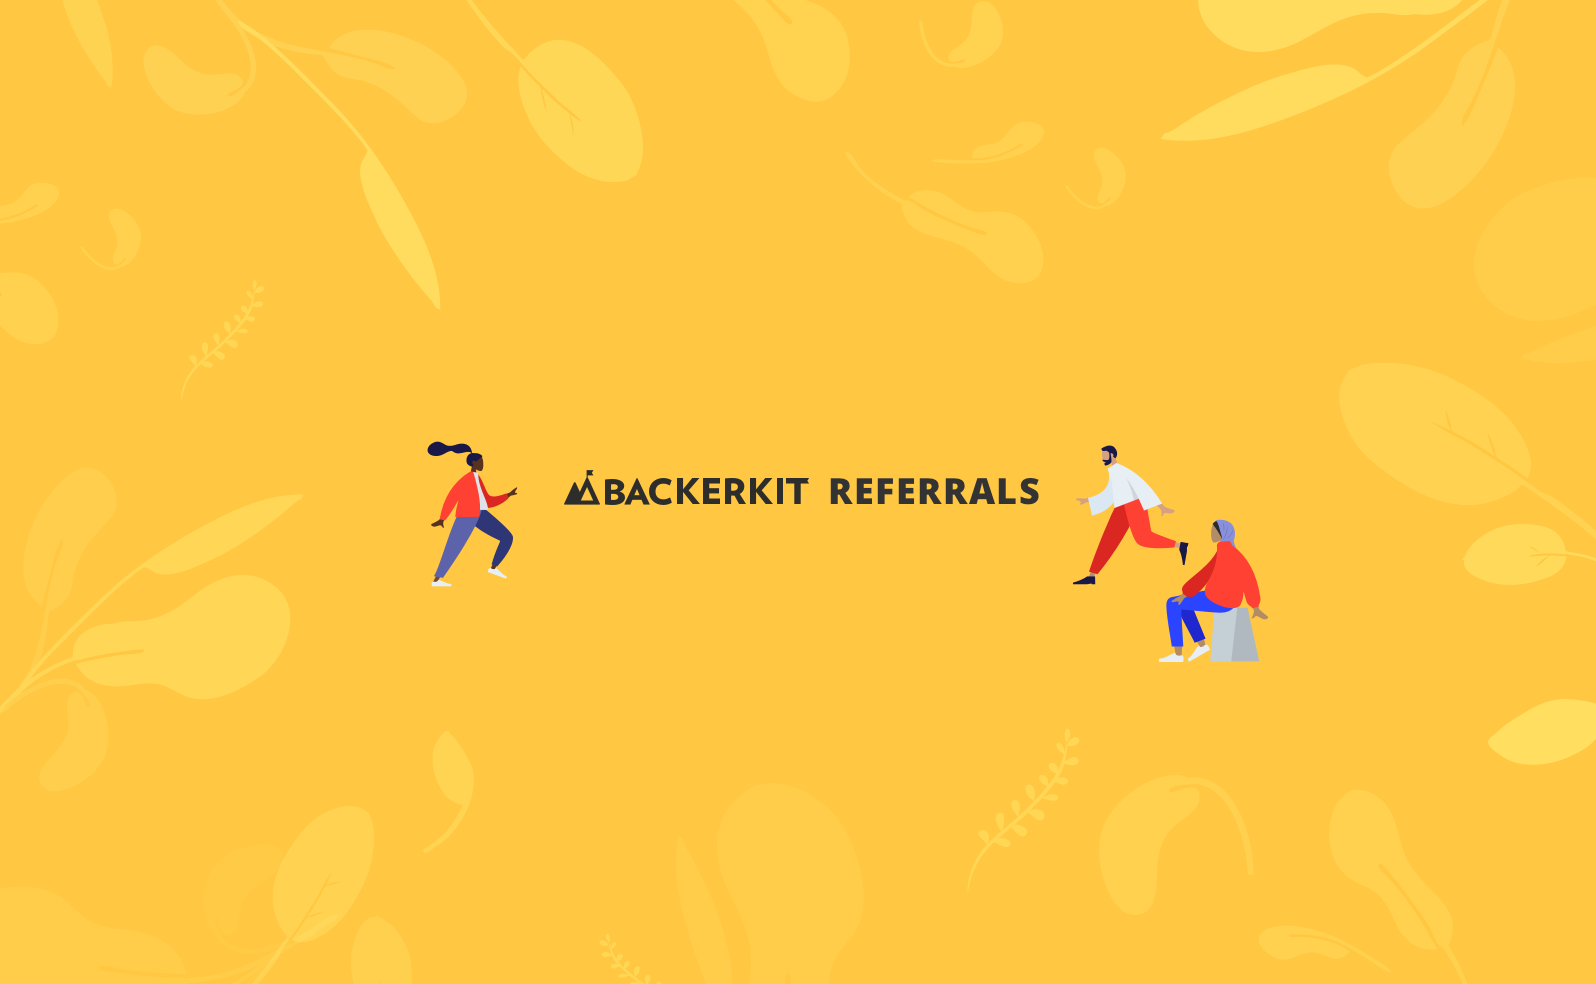 backerkit referrals